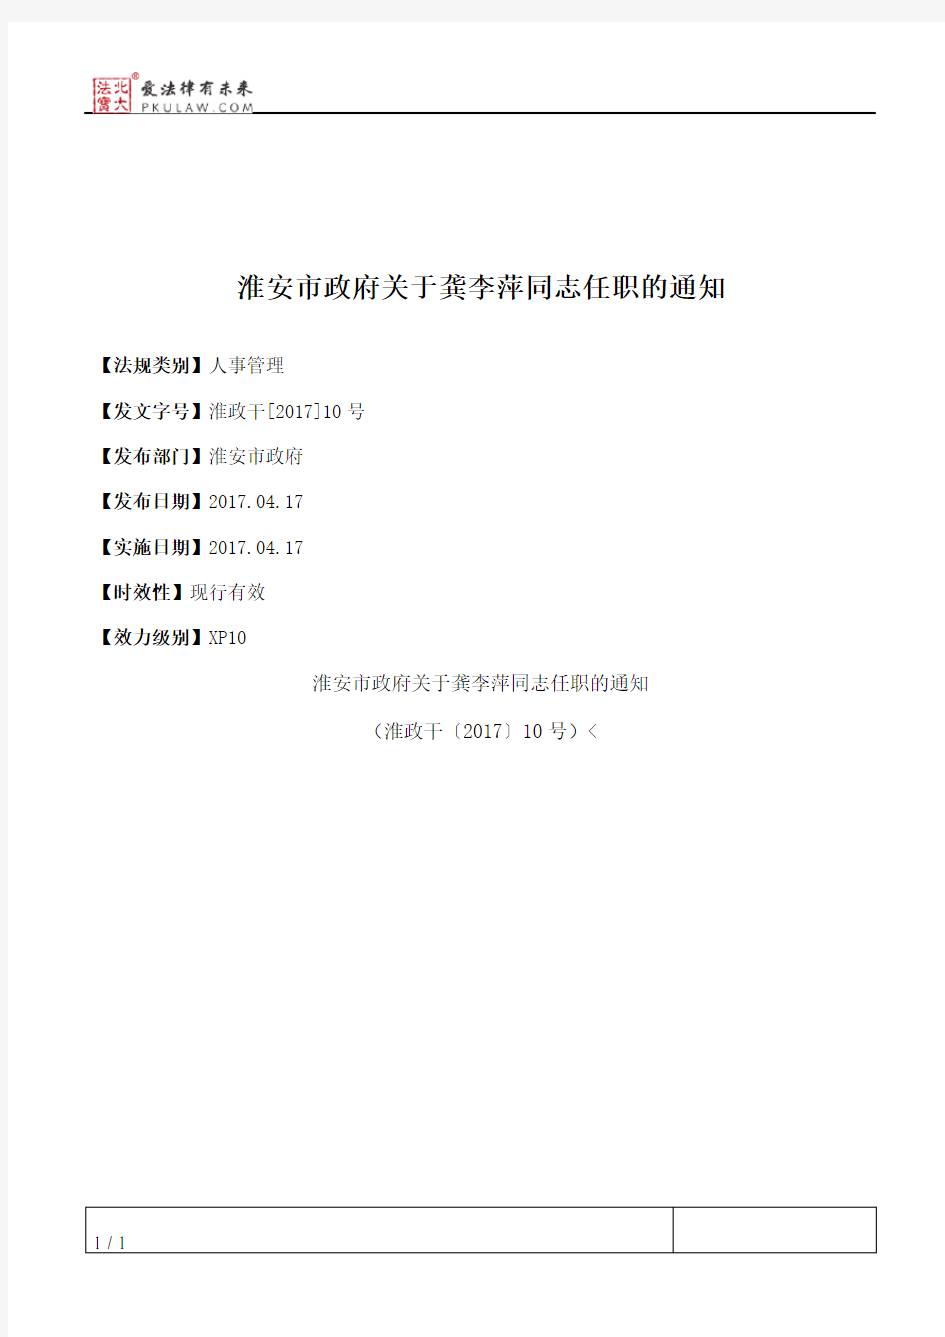 淮安市政府关于龚李萍同志任职的通知